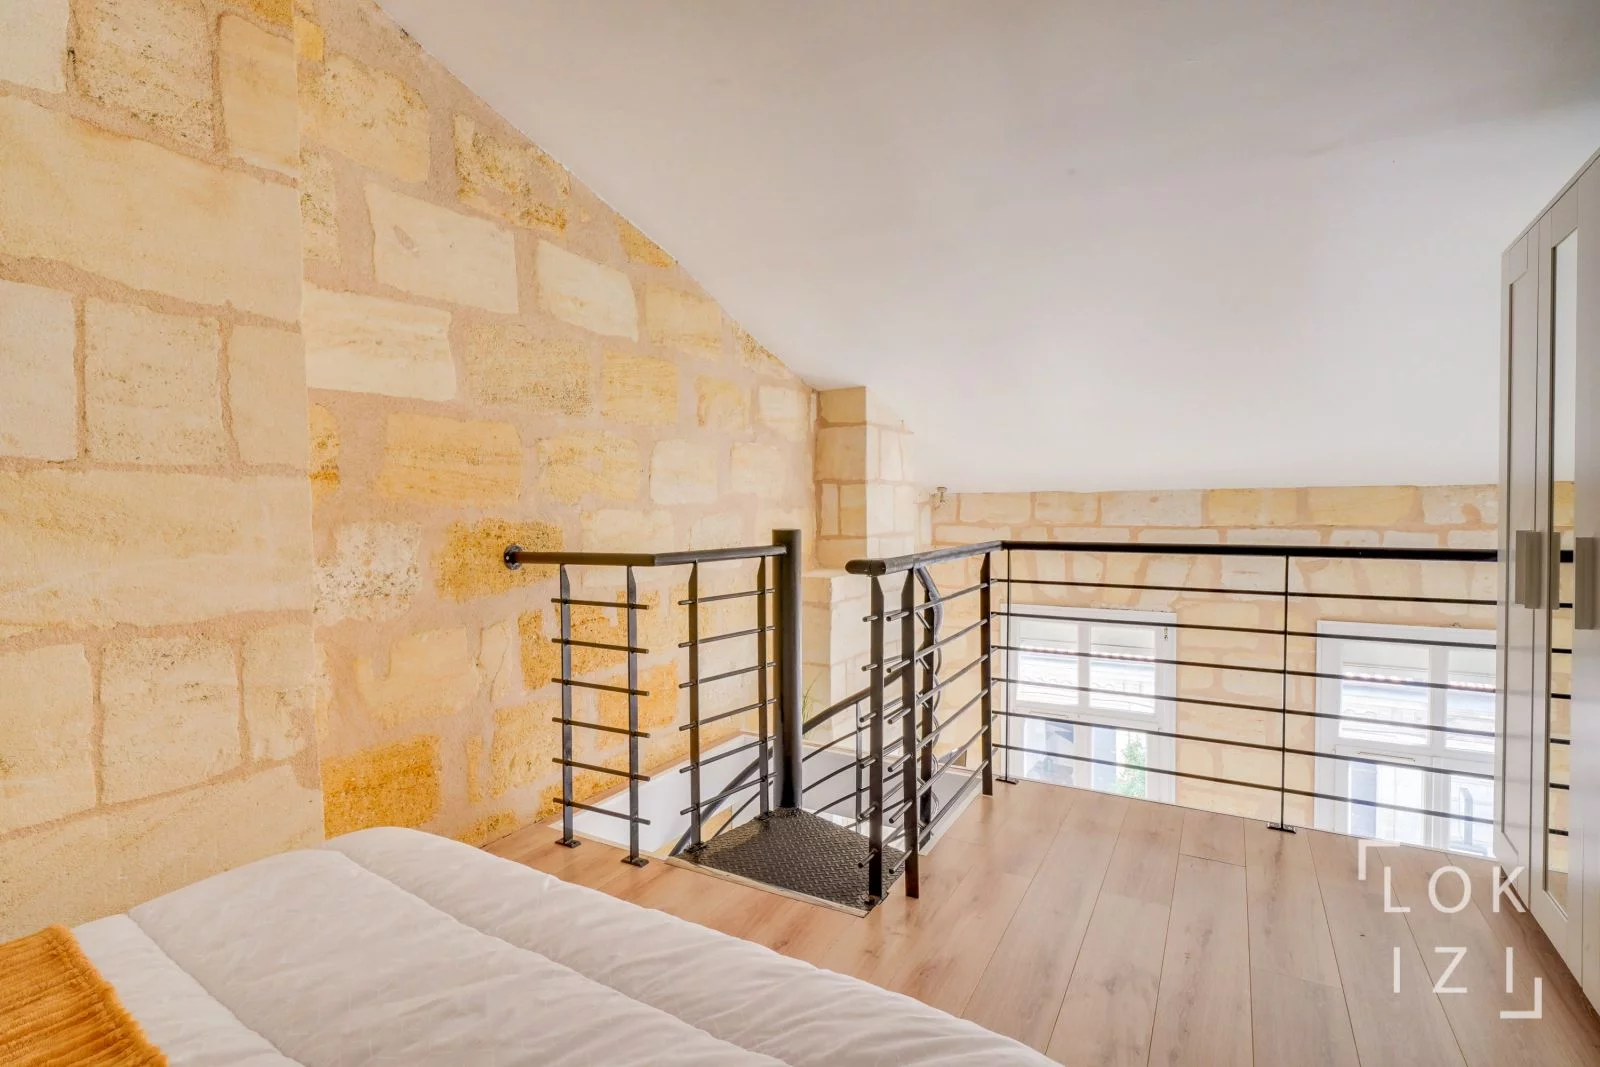 Location appartement duplex T1bis meubl 40m (Bordeaux / Nansouty)